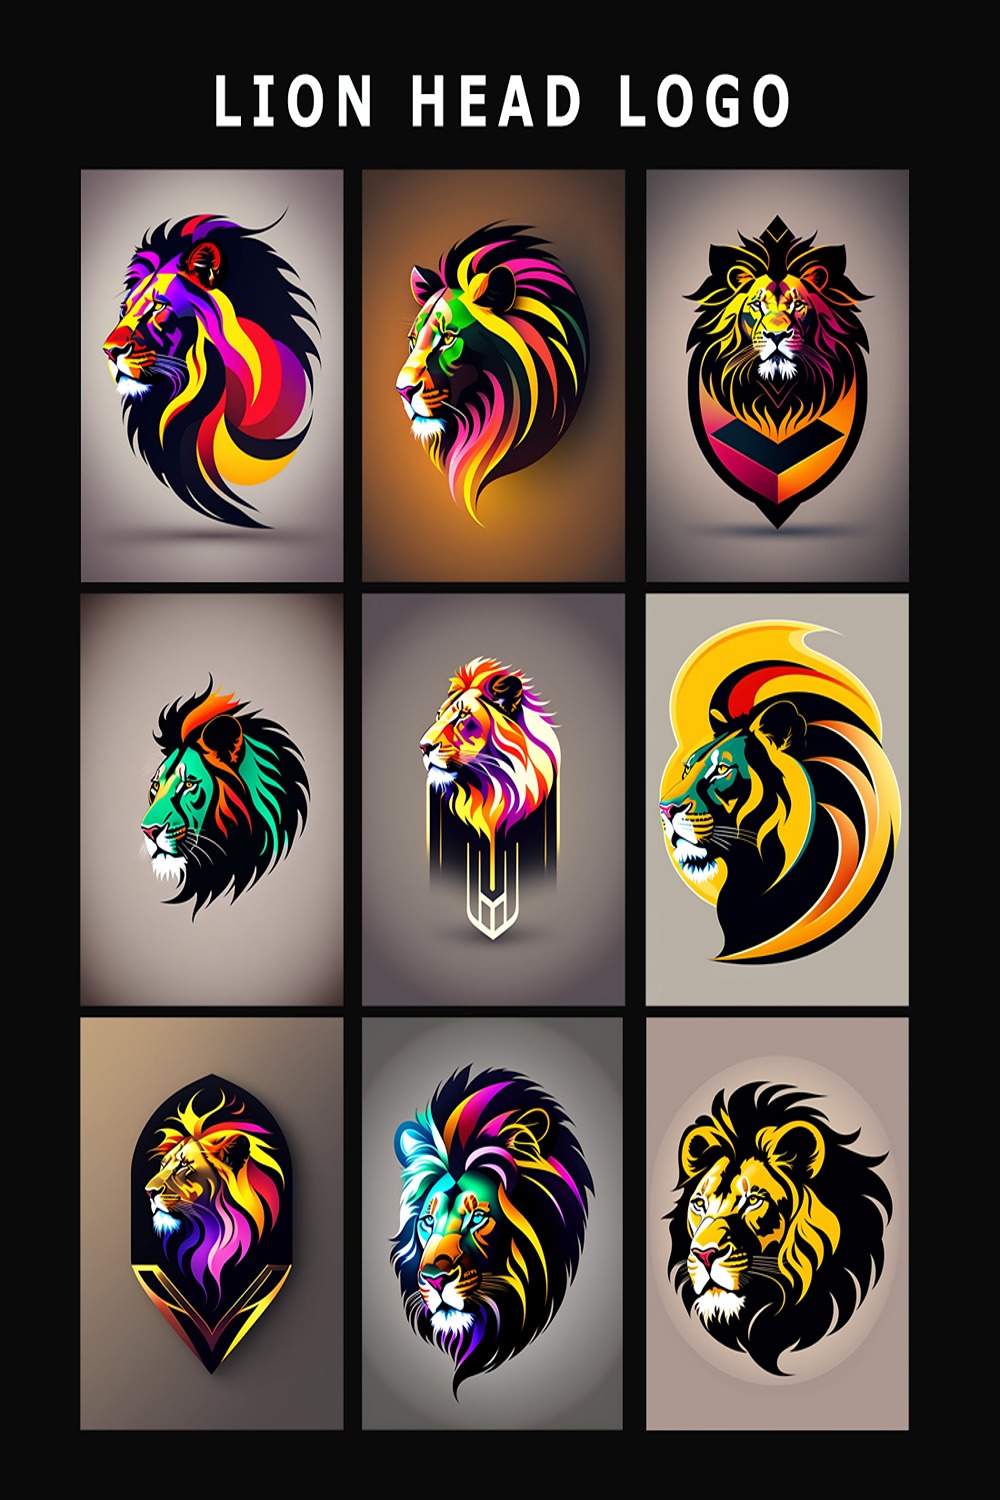 Lion - Head Logo Design Template, lion head color logo, lion head vector logo, lion head icon logo, lion logo pinterest preview image.